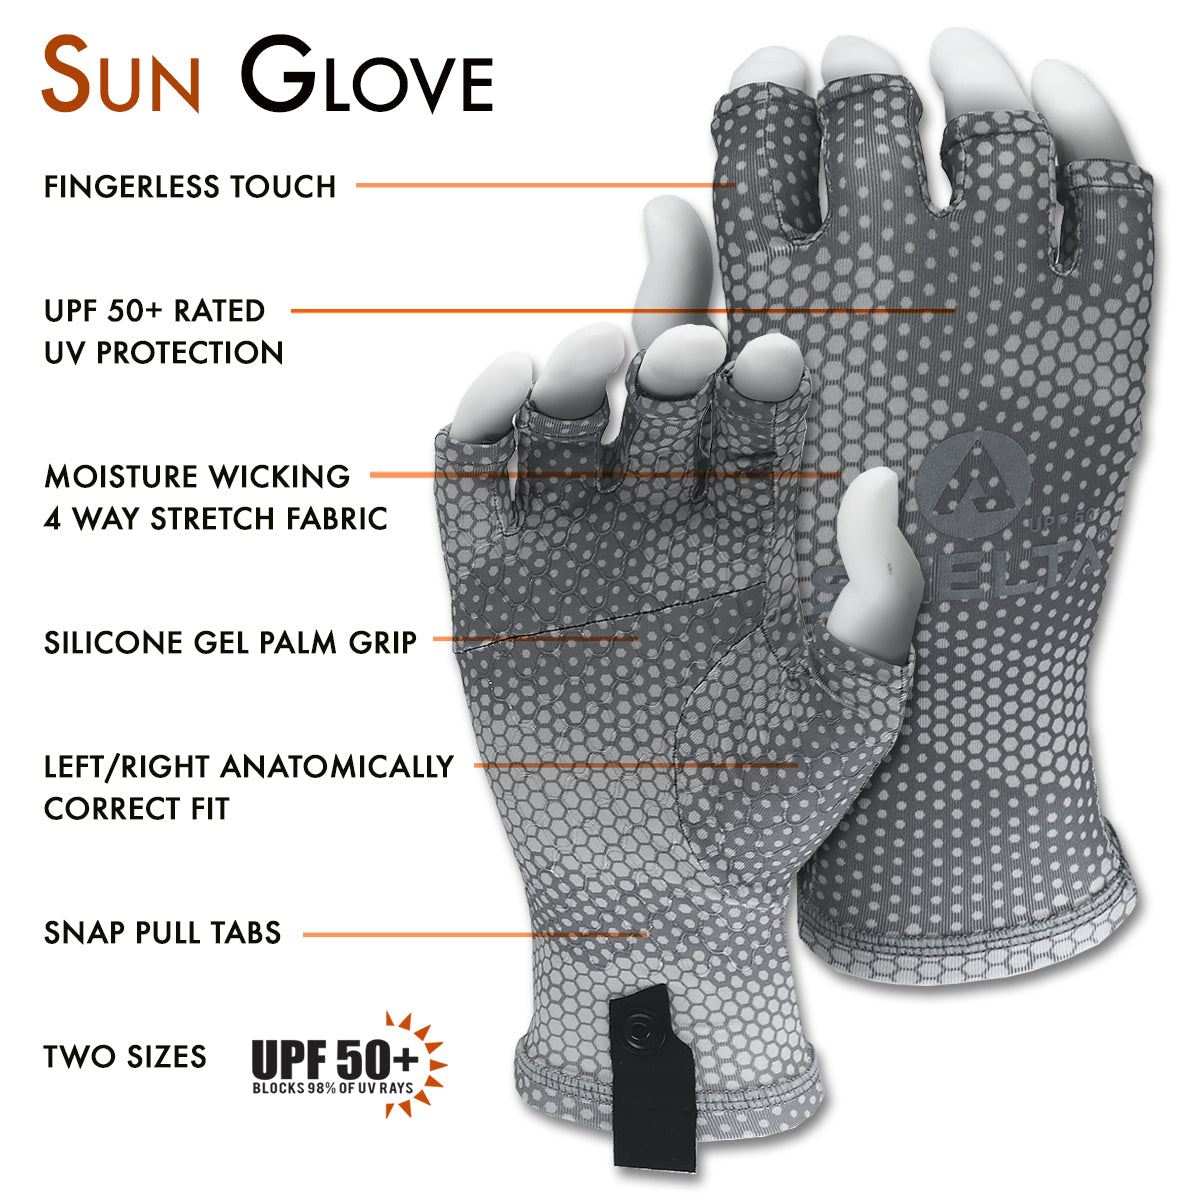 The Shelta Sun Gloves